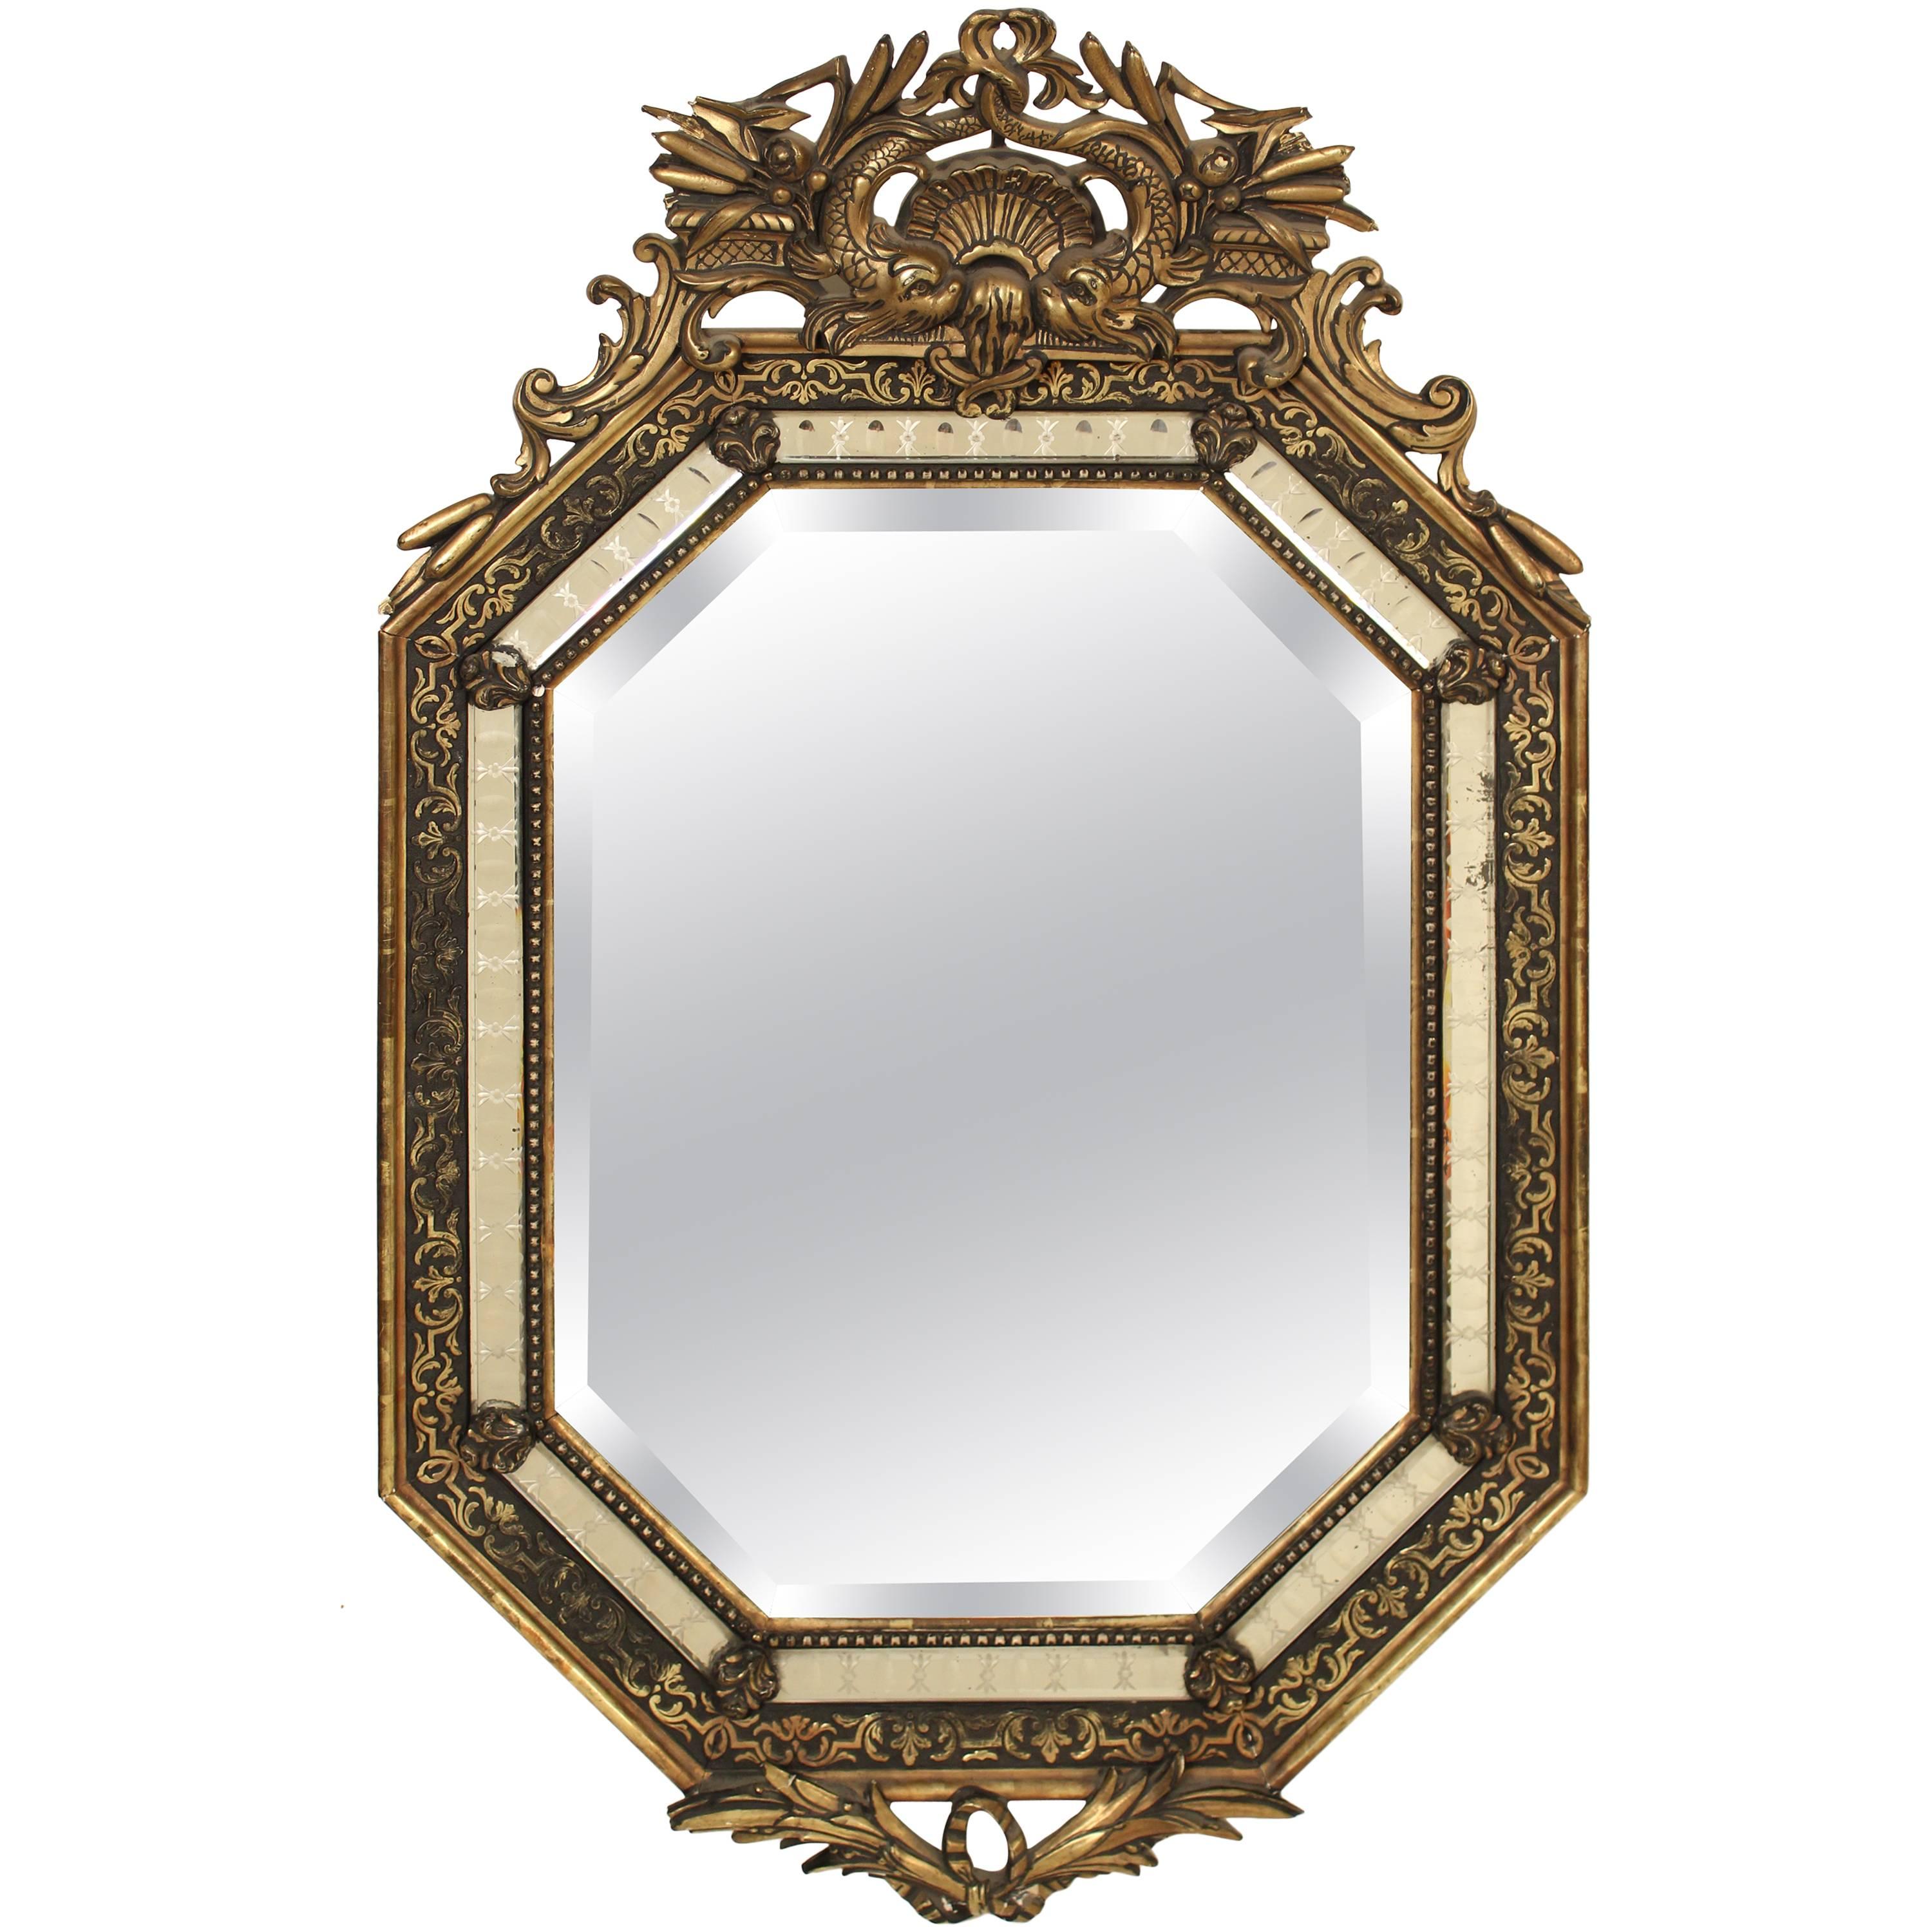 Napoleon III Style Giltwood Mirror